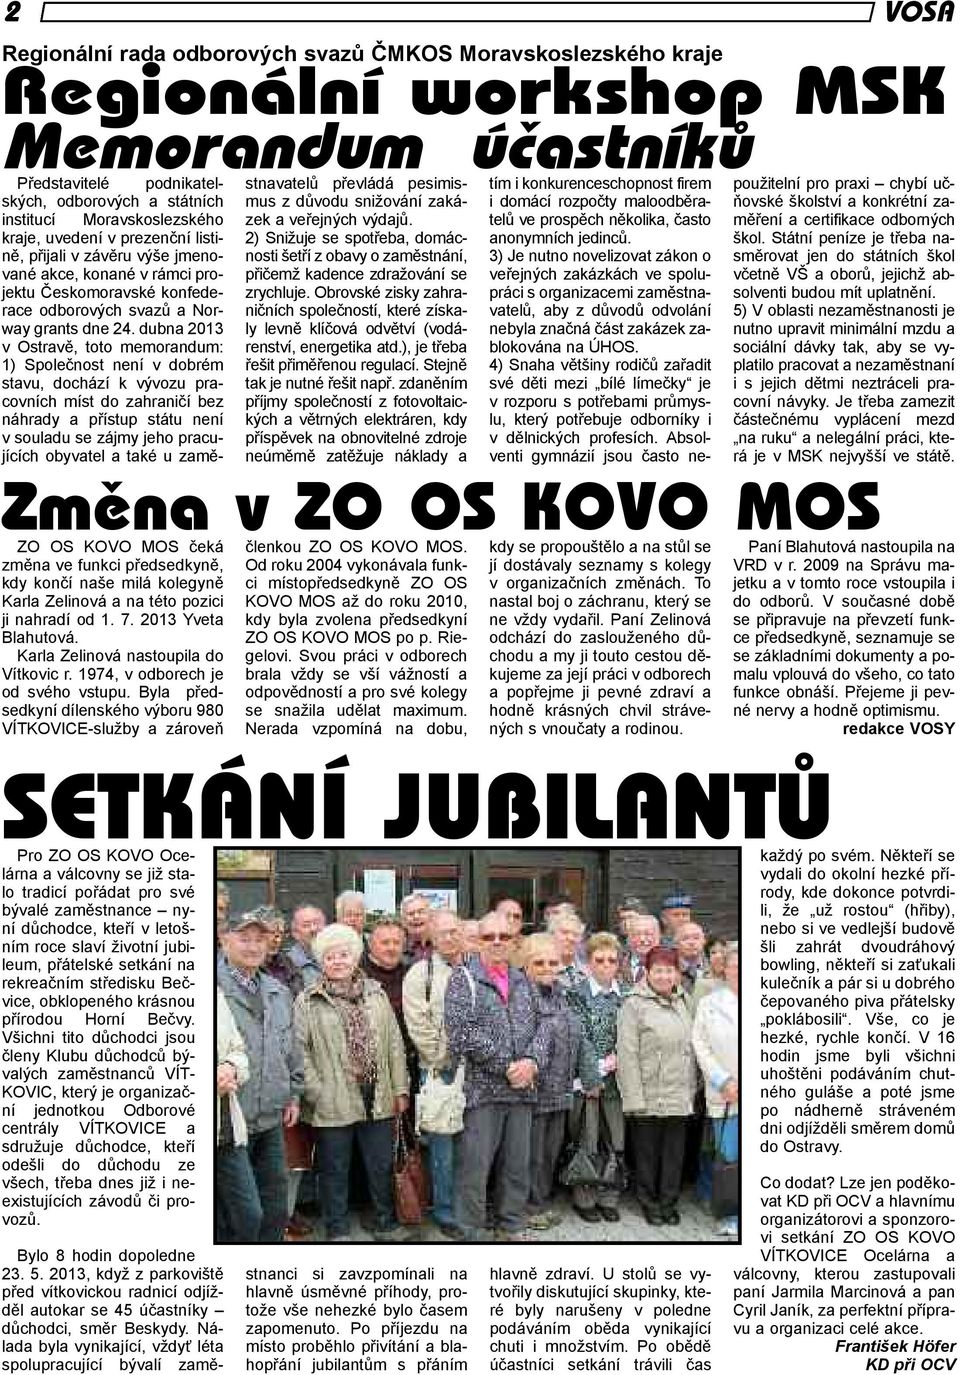 dubna 2013 v Ostravě, toto memorandum: 1) Společnost není v dobrém stavu, dochází k vývozu pracovních míst do zahraničí bez náhrady a přístup státu není v souladu se zájmy jeho pracujících obyvatel a